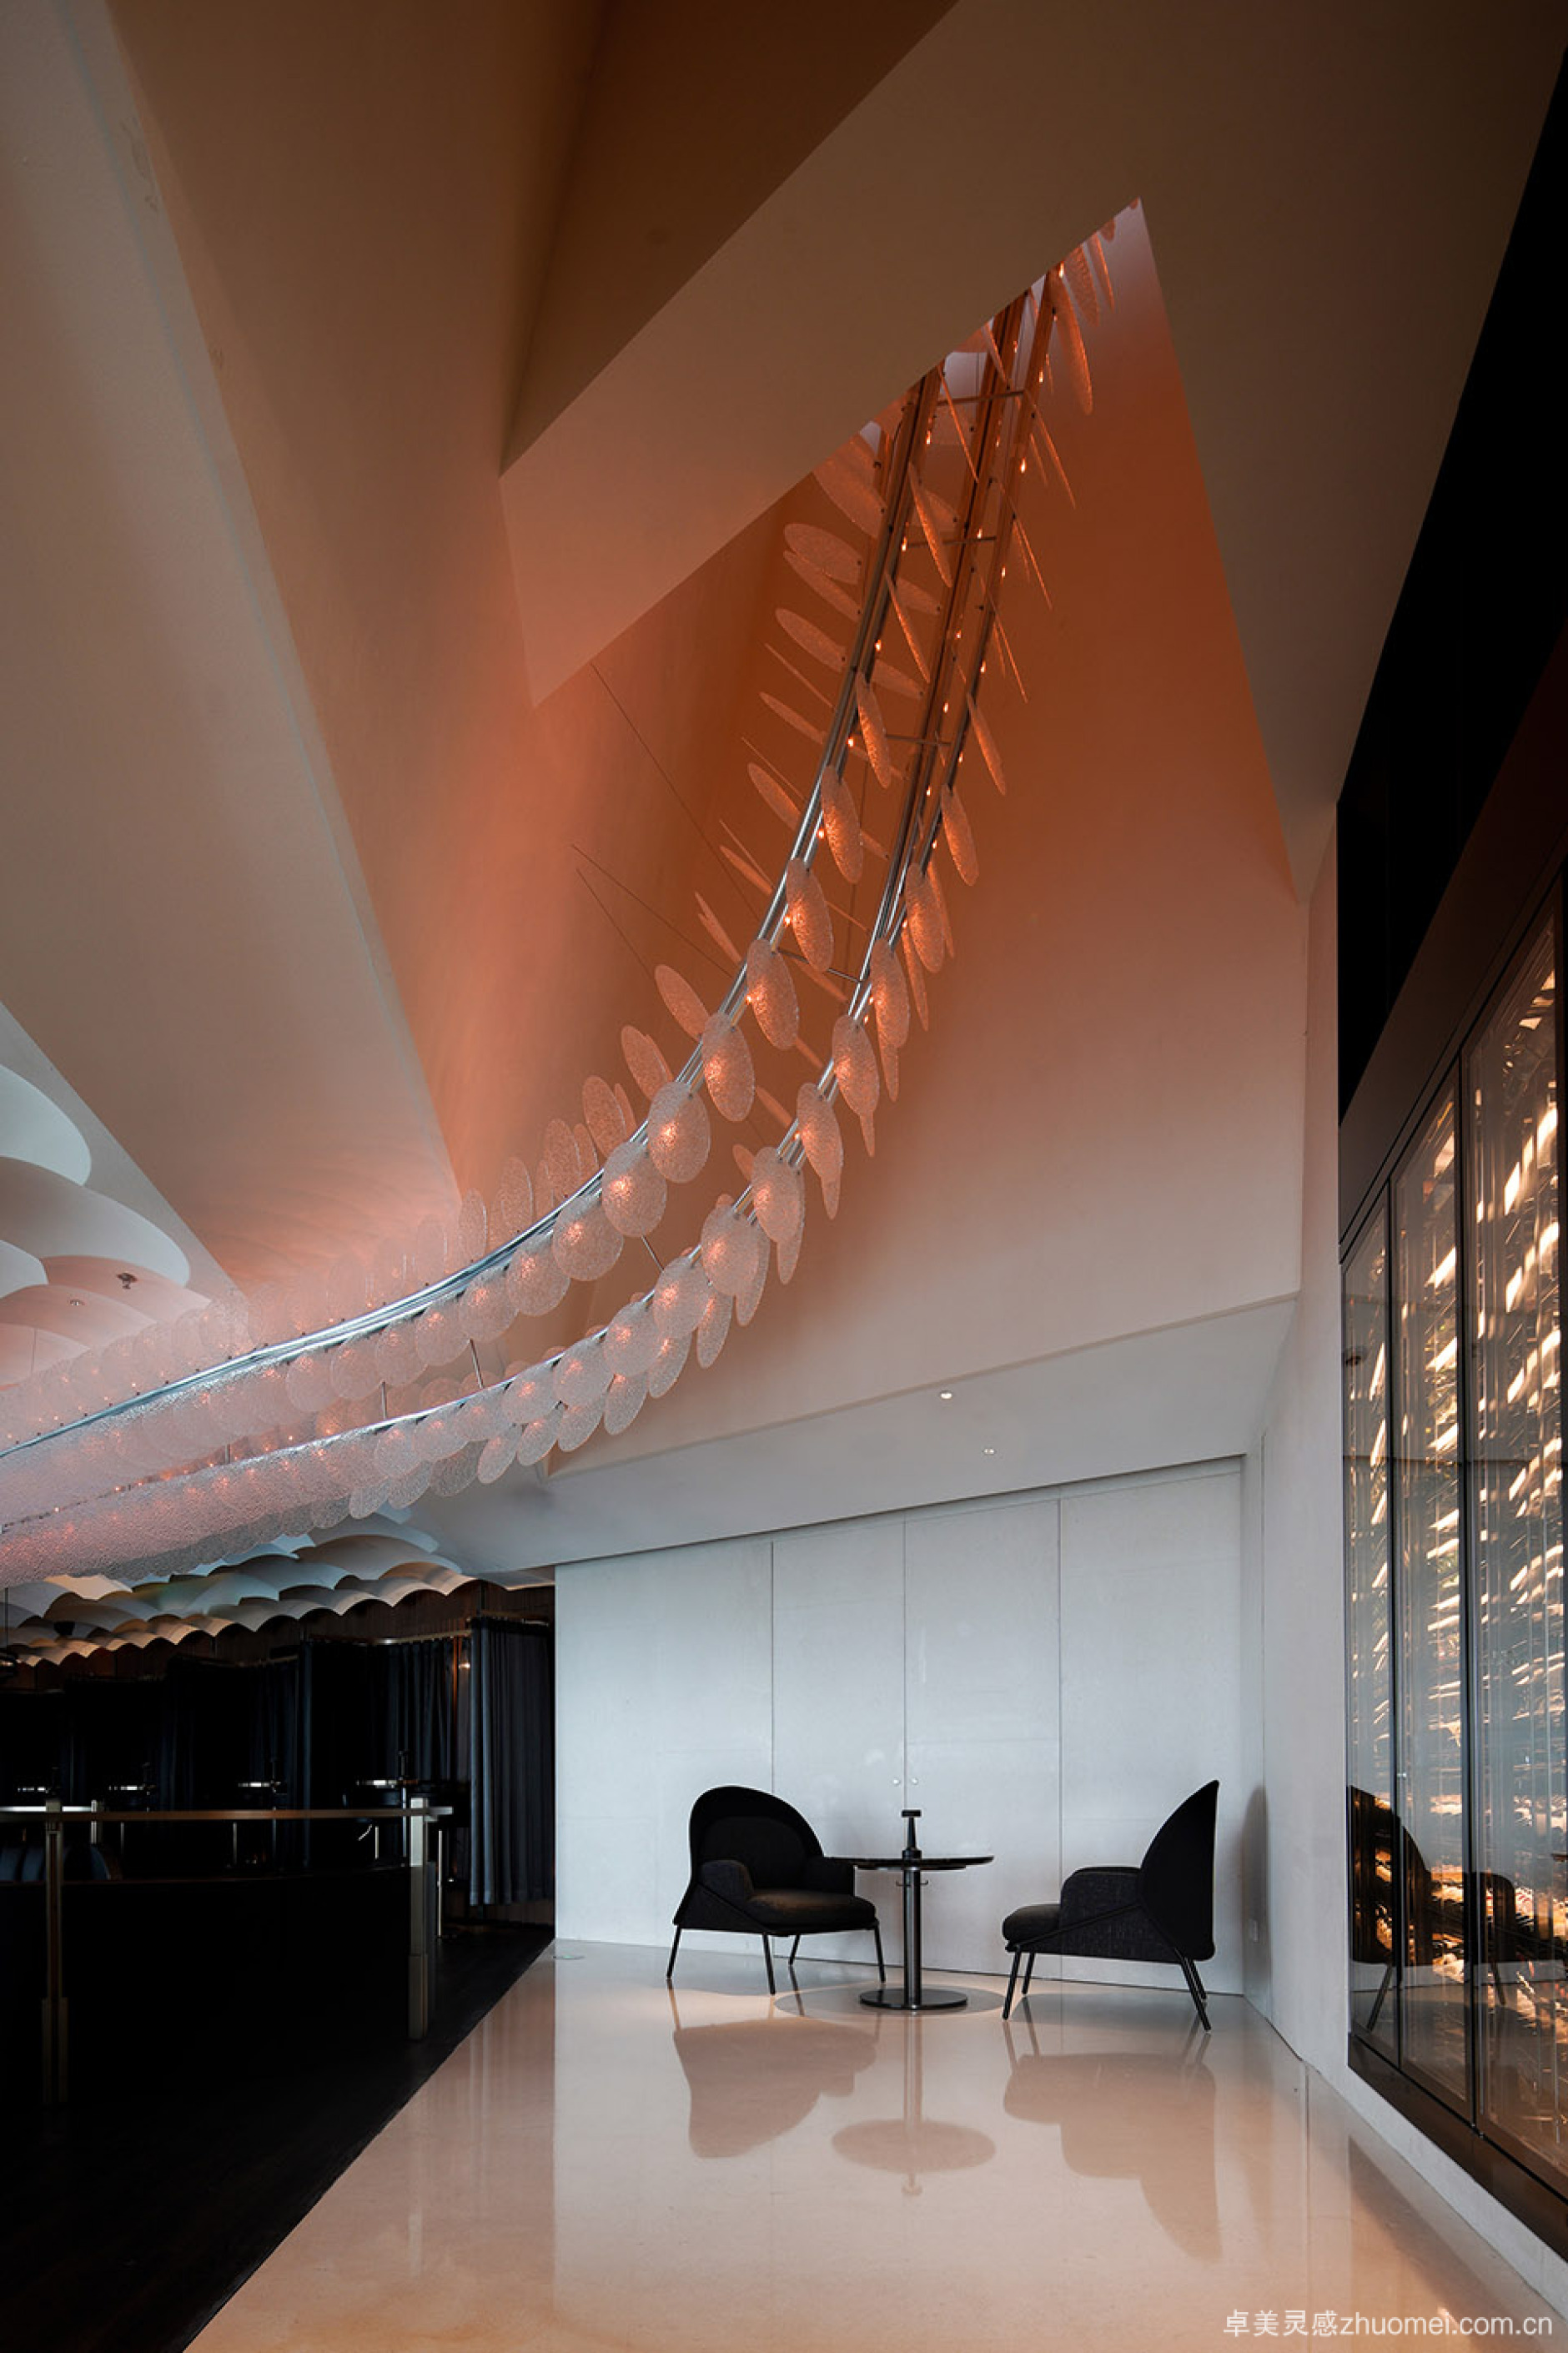 苏州 W 酒店 SOL37 酒廊 | 独特的空间设计与艺术品的完美融合-184